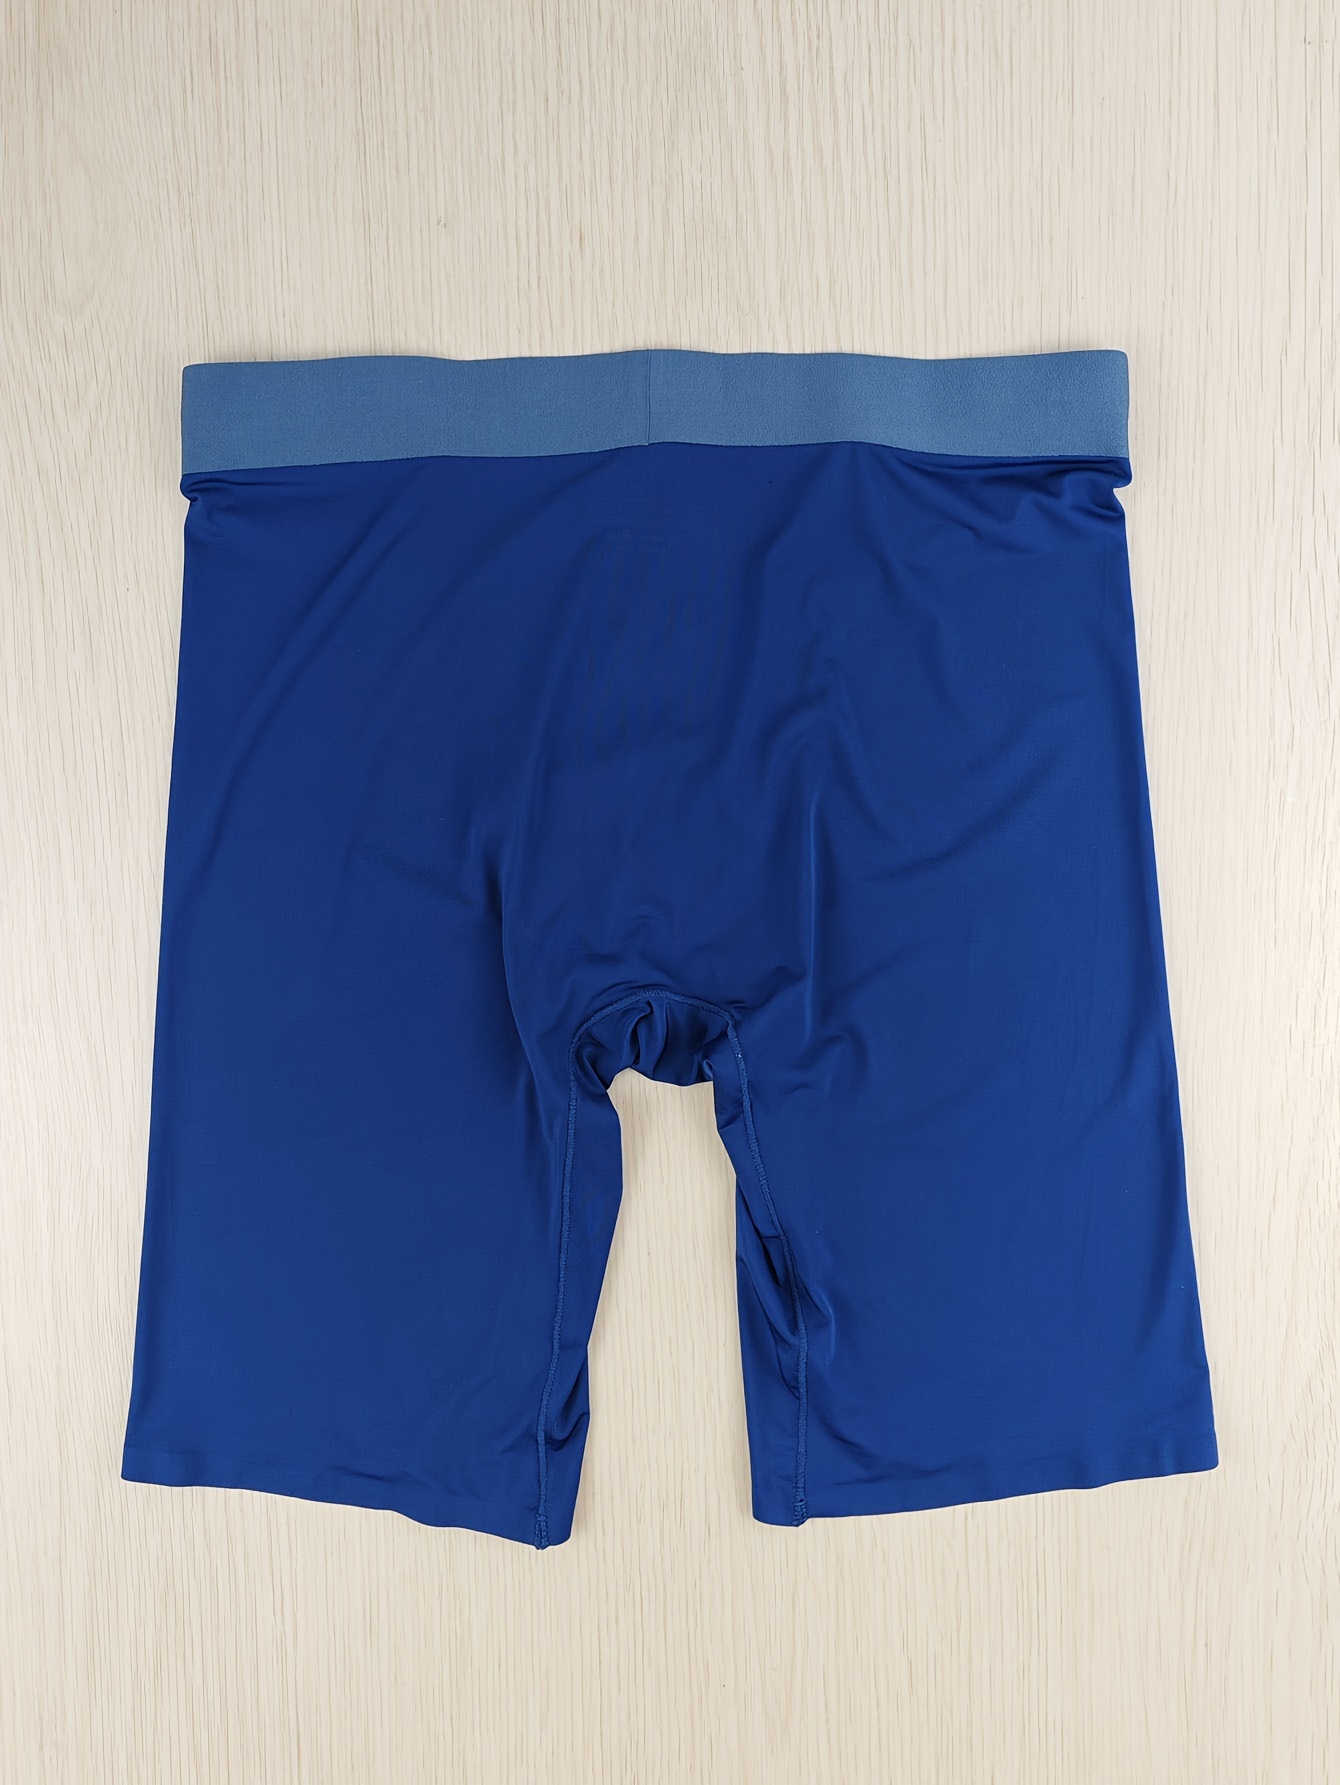 Mens Underwear Boxer Briefs Stretch Cotton Custom Designs Logo 5 Inch  Inseam Men Underwear Plus Size Underwear for Men - China Underpants and  Underwear price